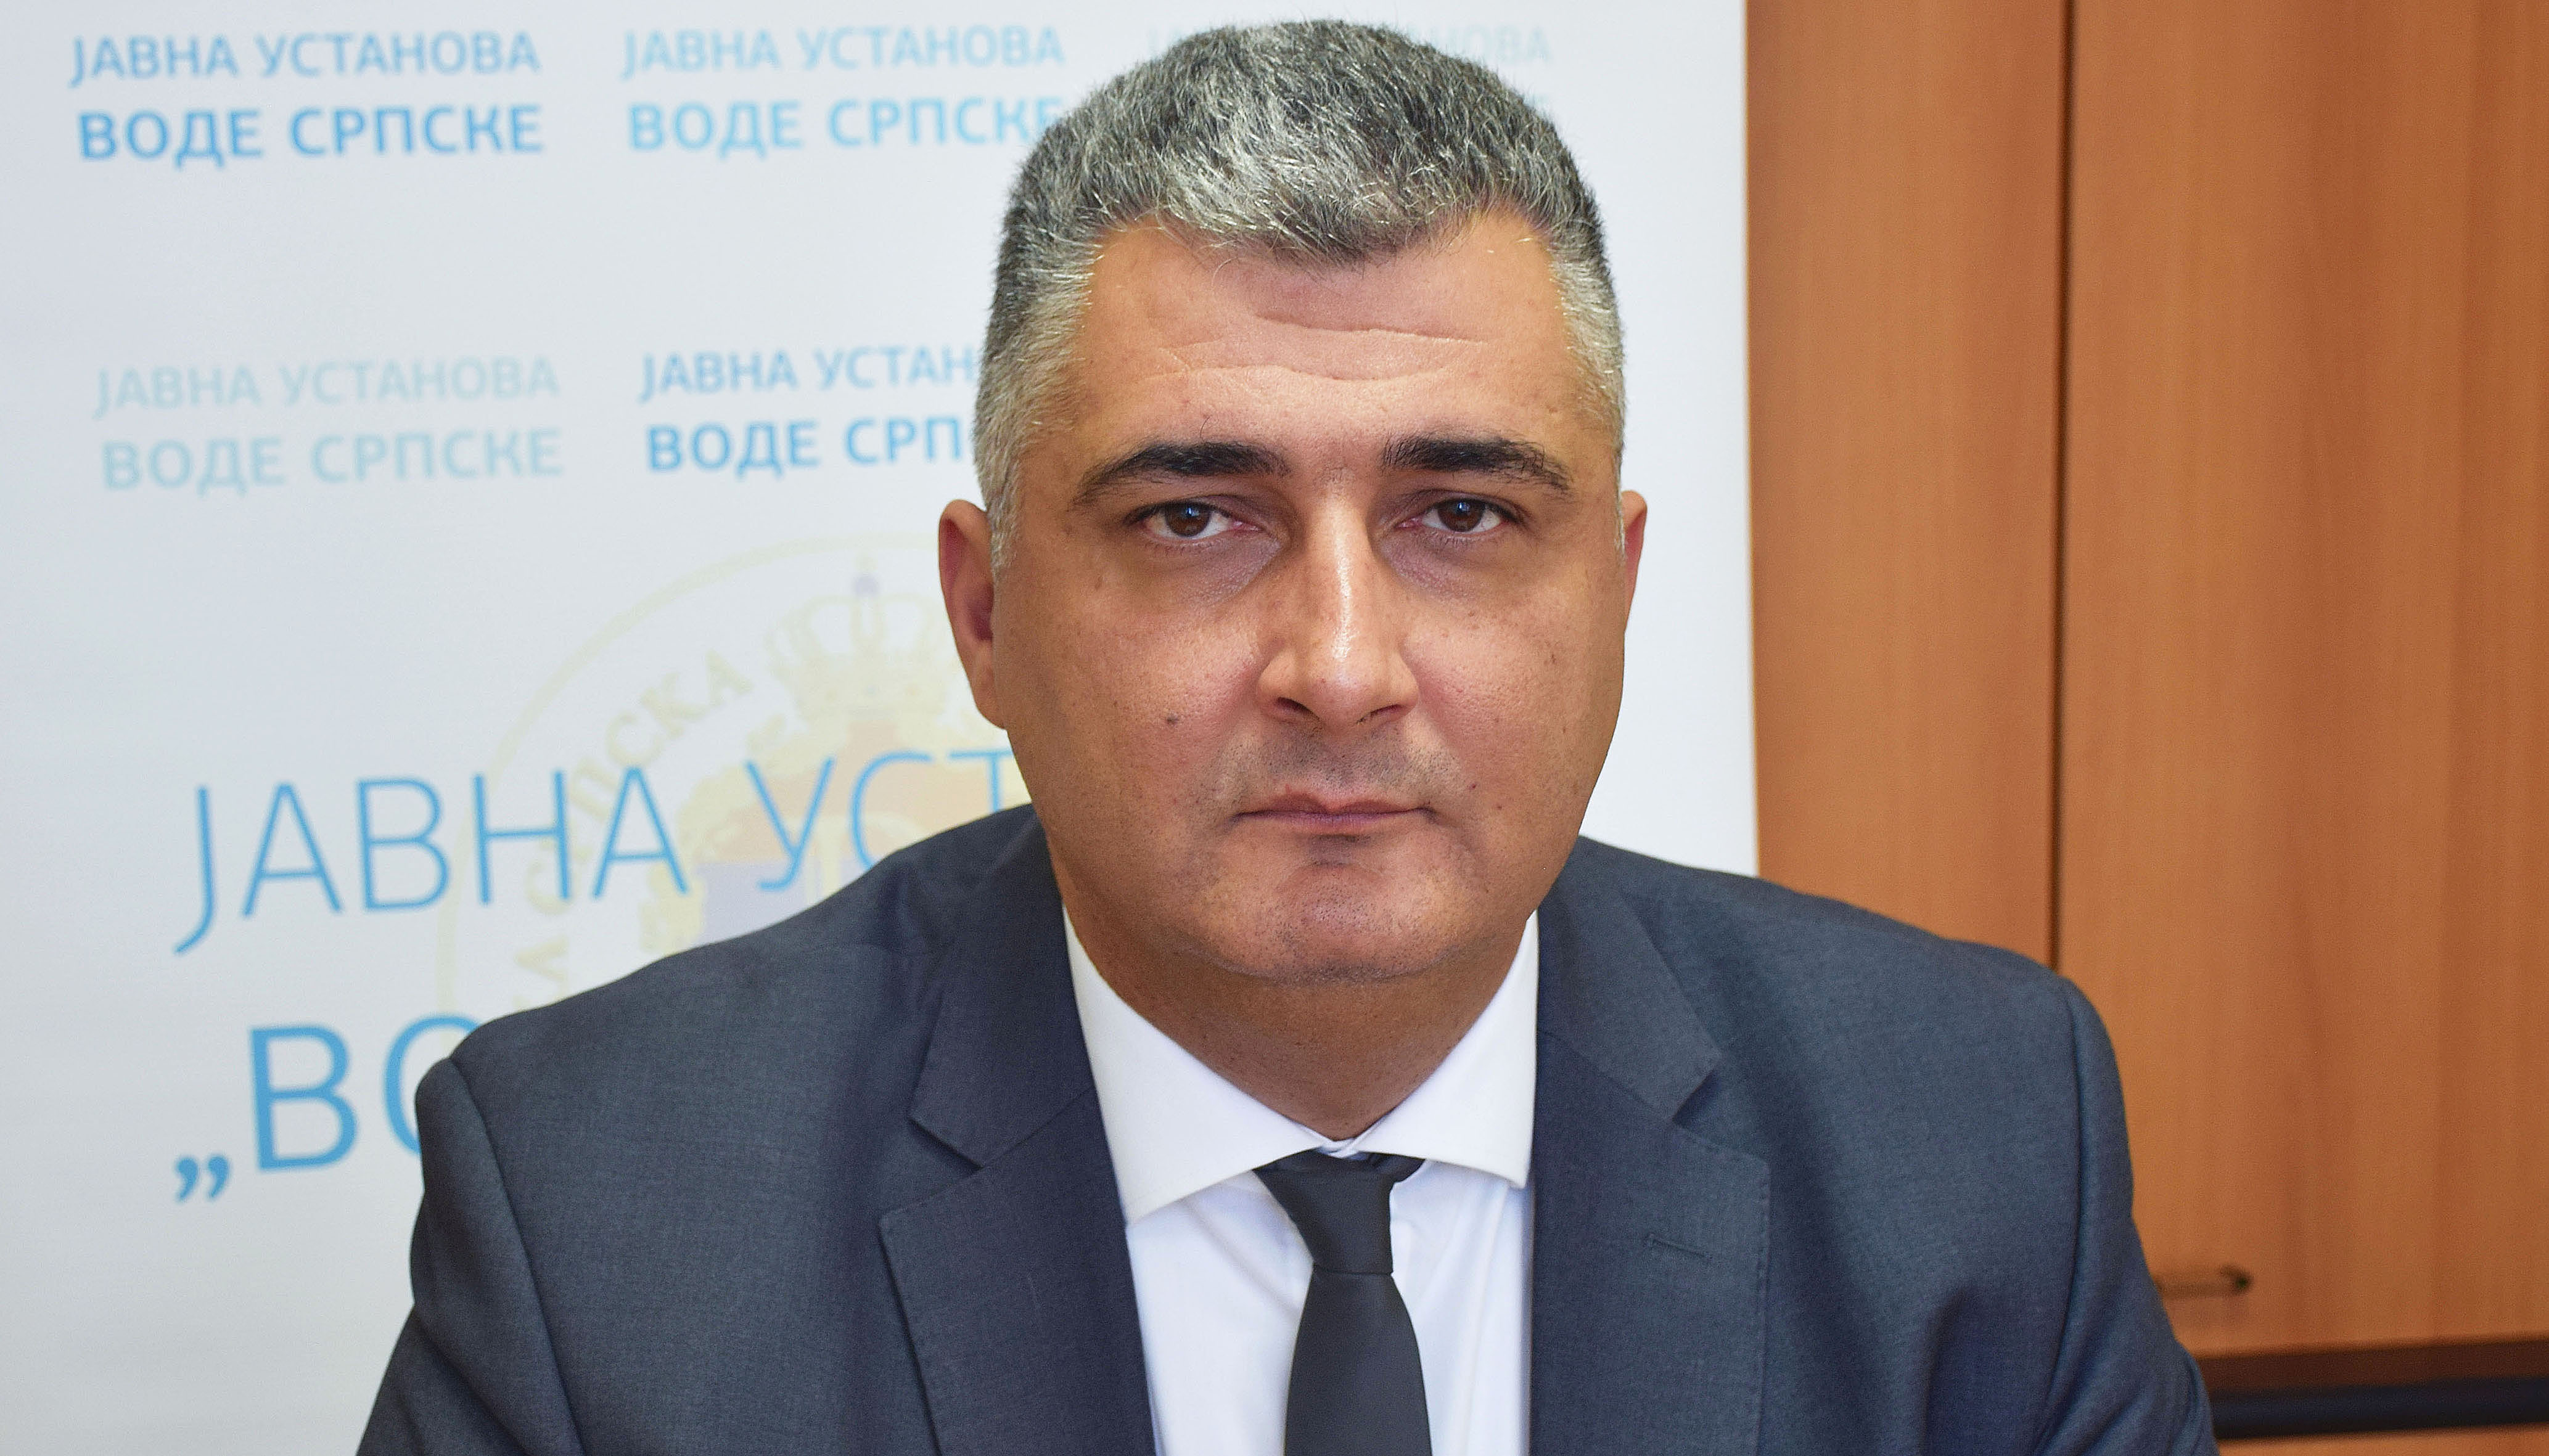 Direktor Milovanović: Zadovoljni smo ostvarenim rezultatima u 2020. godini